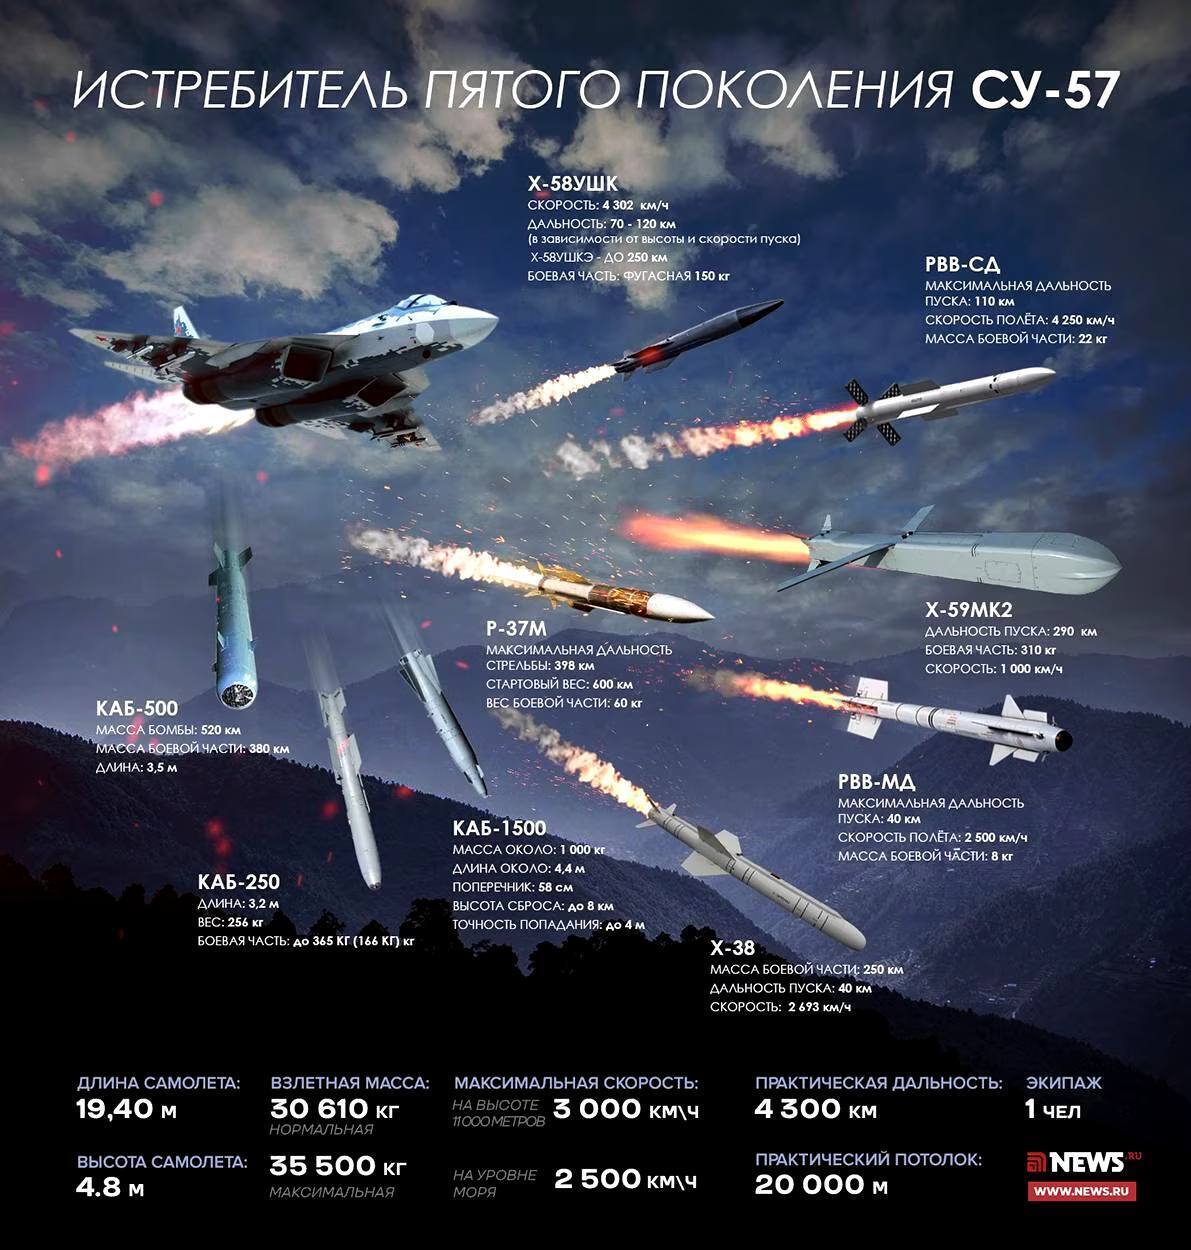 Впервые в истории: ГУР уничтожило на аэродроме истребитель Су-57